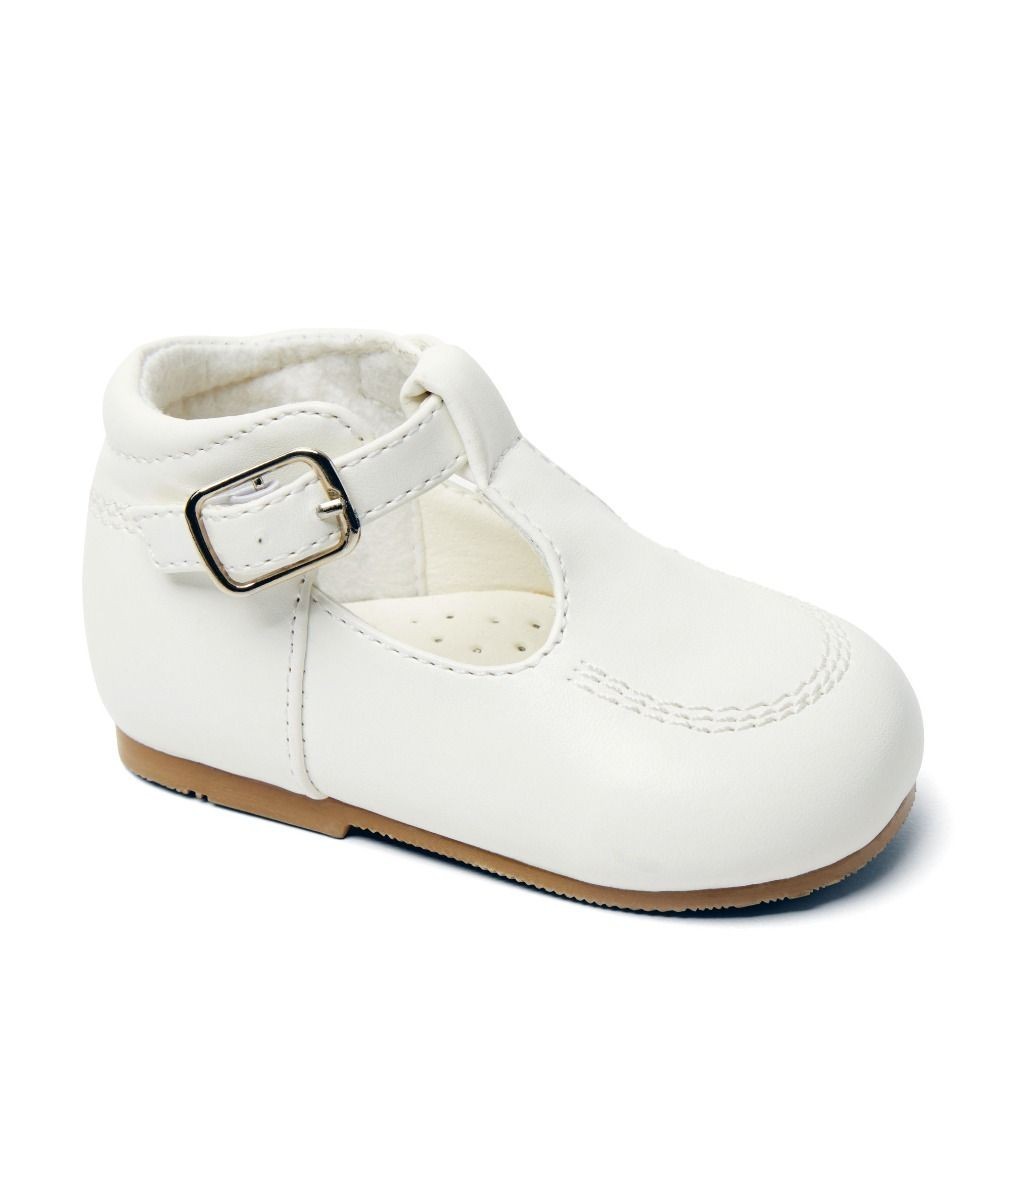 Chaussures à Boucle en Cuir pour Bébés & Garçons – TEDDY - Blanc